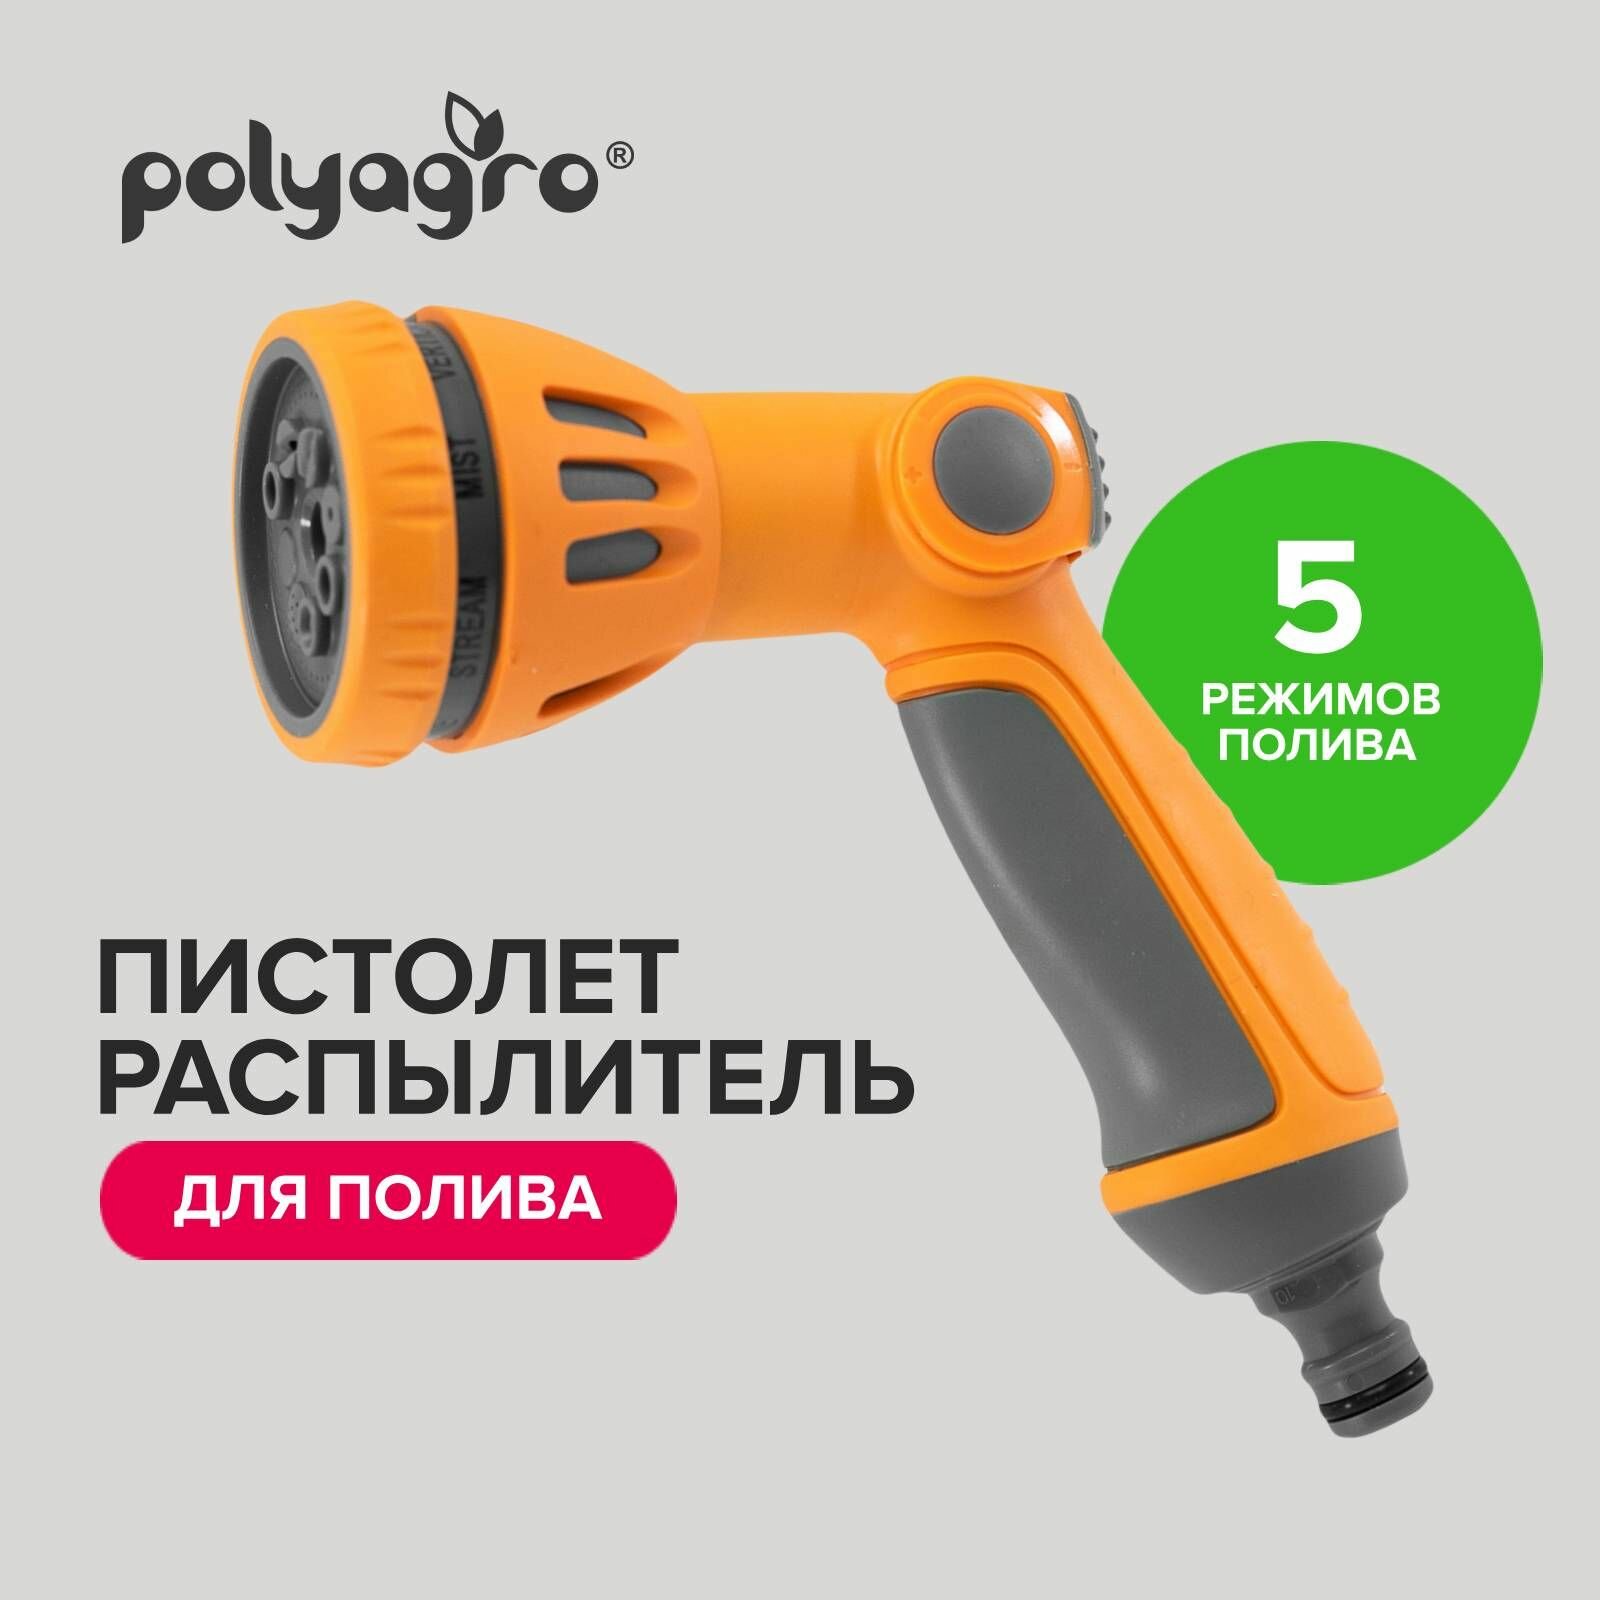 Пистолет-распылитель для полива 5 режимов Polyagro